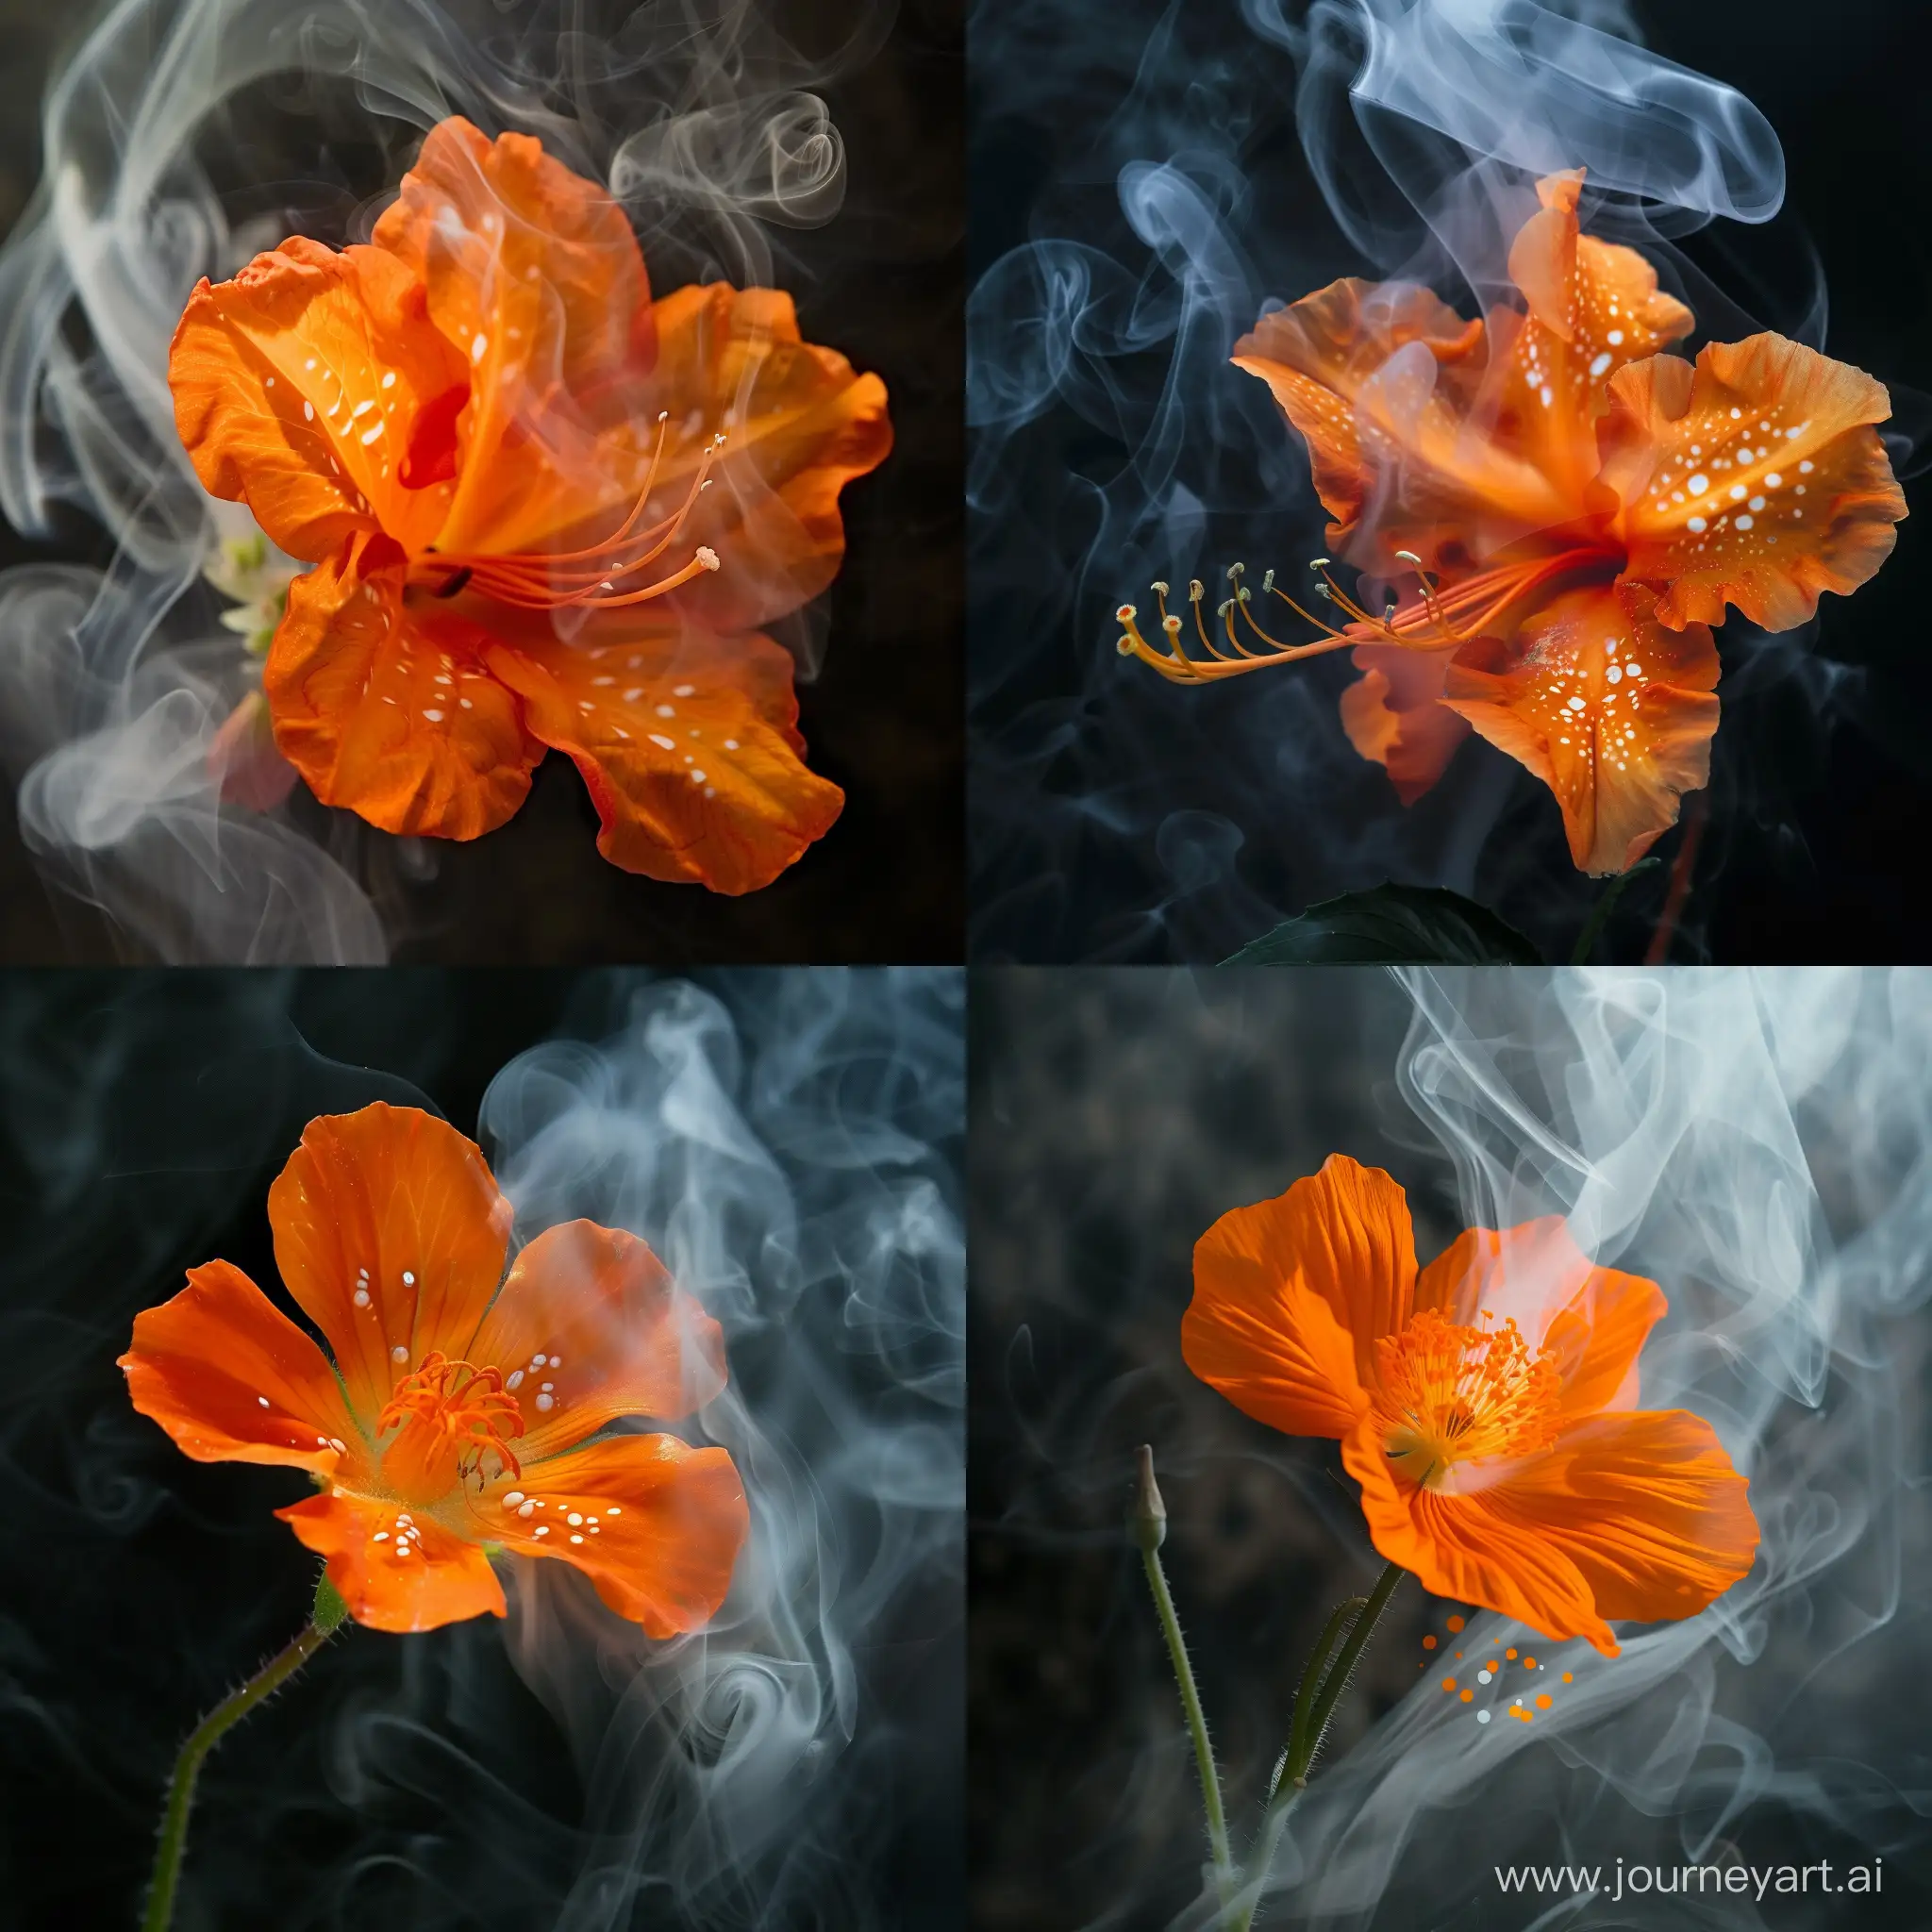 Vibrant-Orange-Flower-with-White-Spots-Amidst-Wispy-Smoke